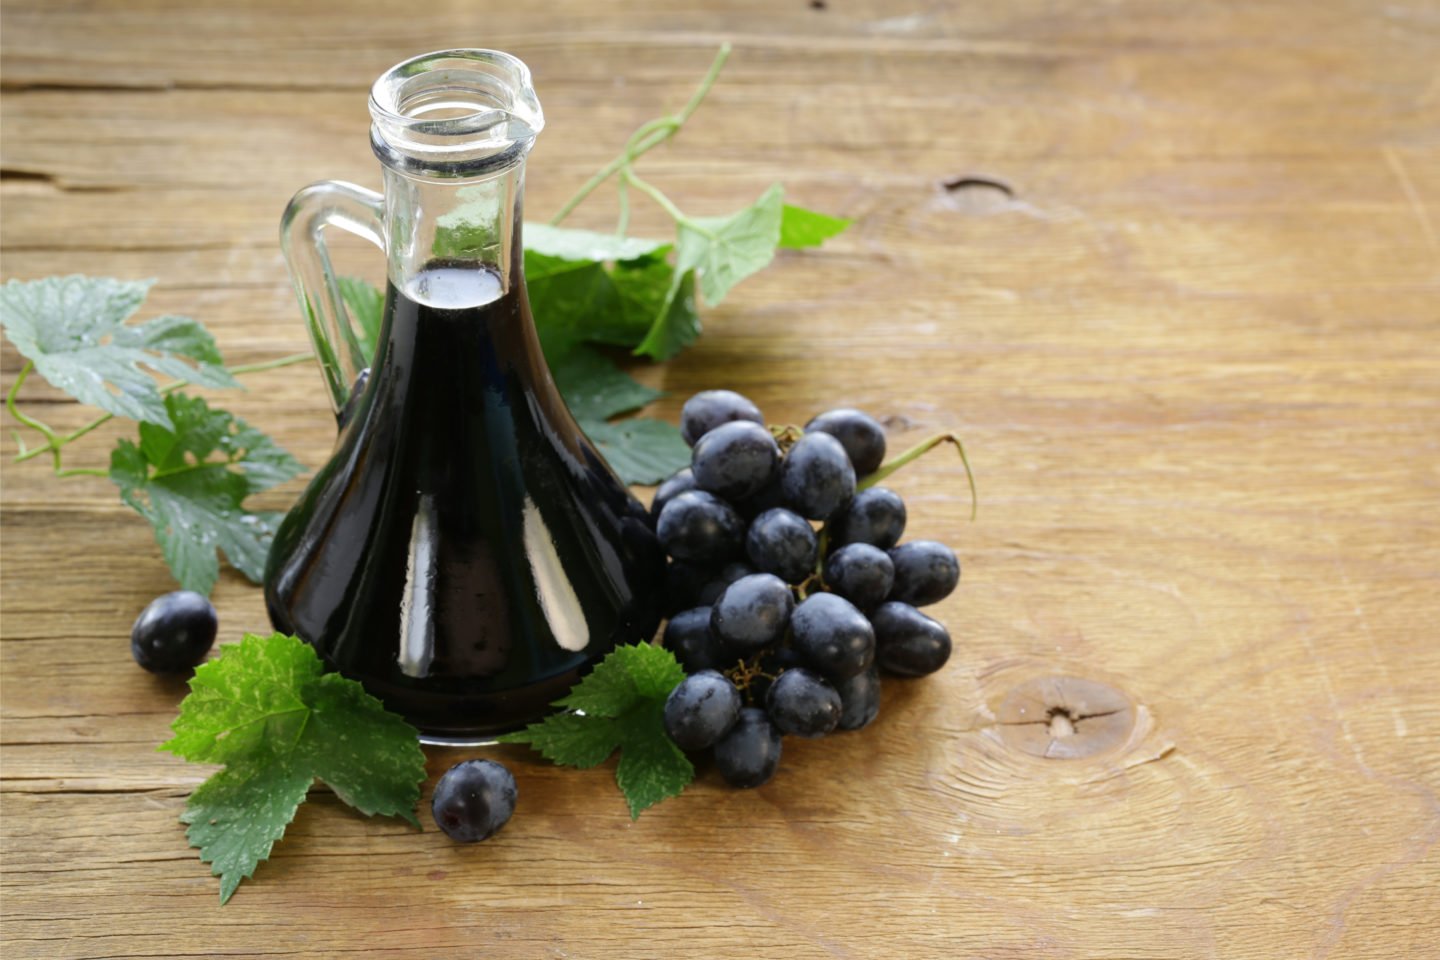 balsamic vinegar beside grapes